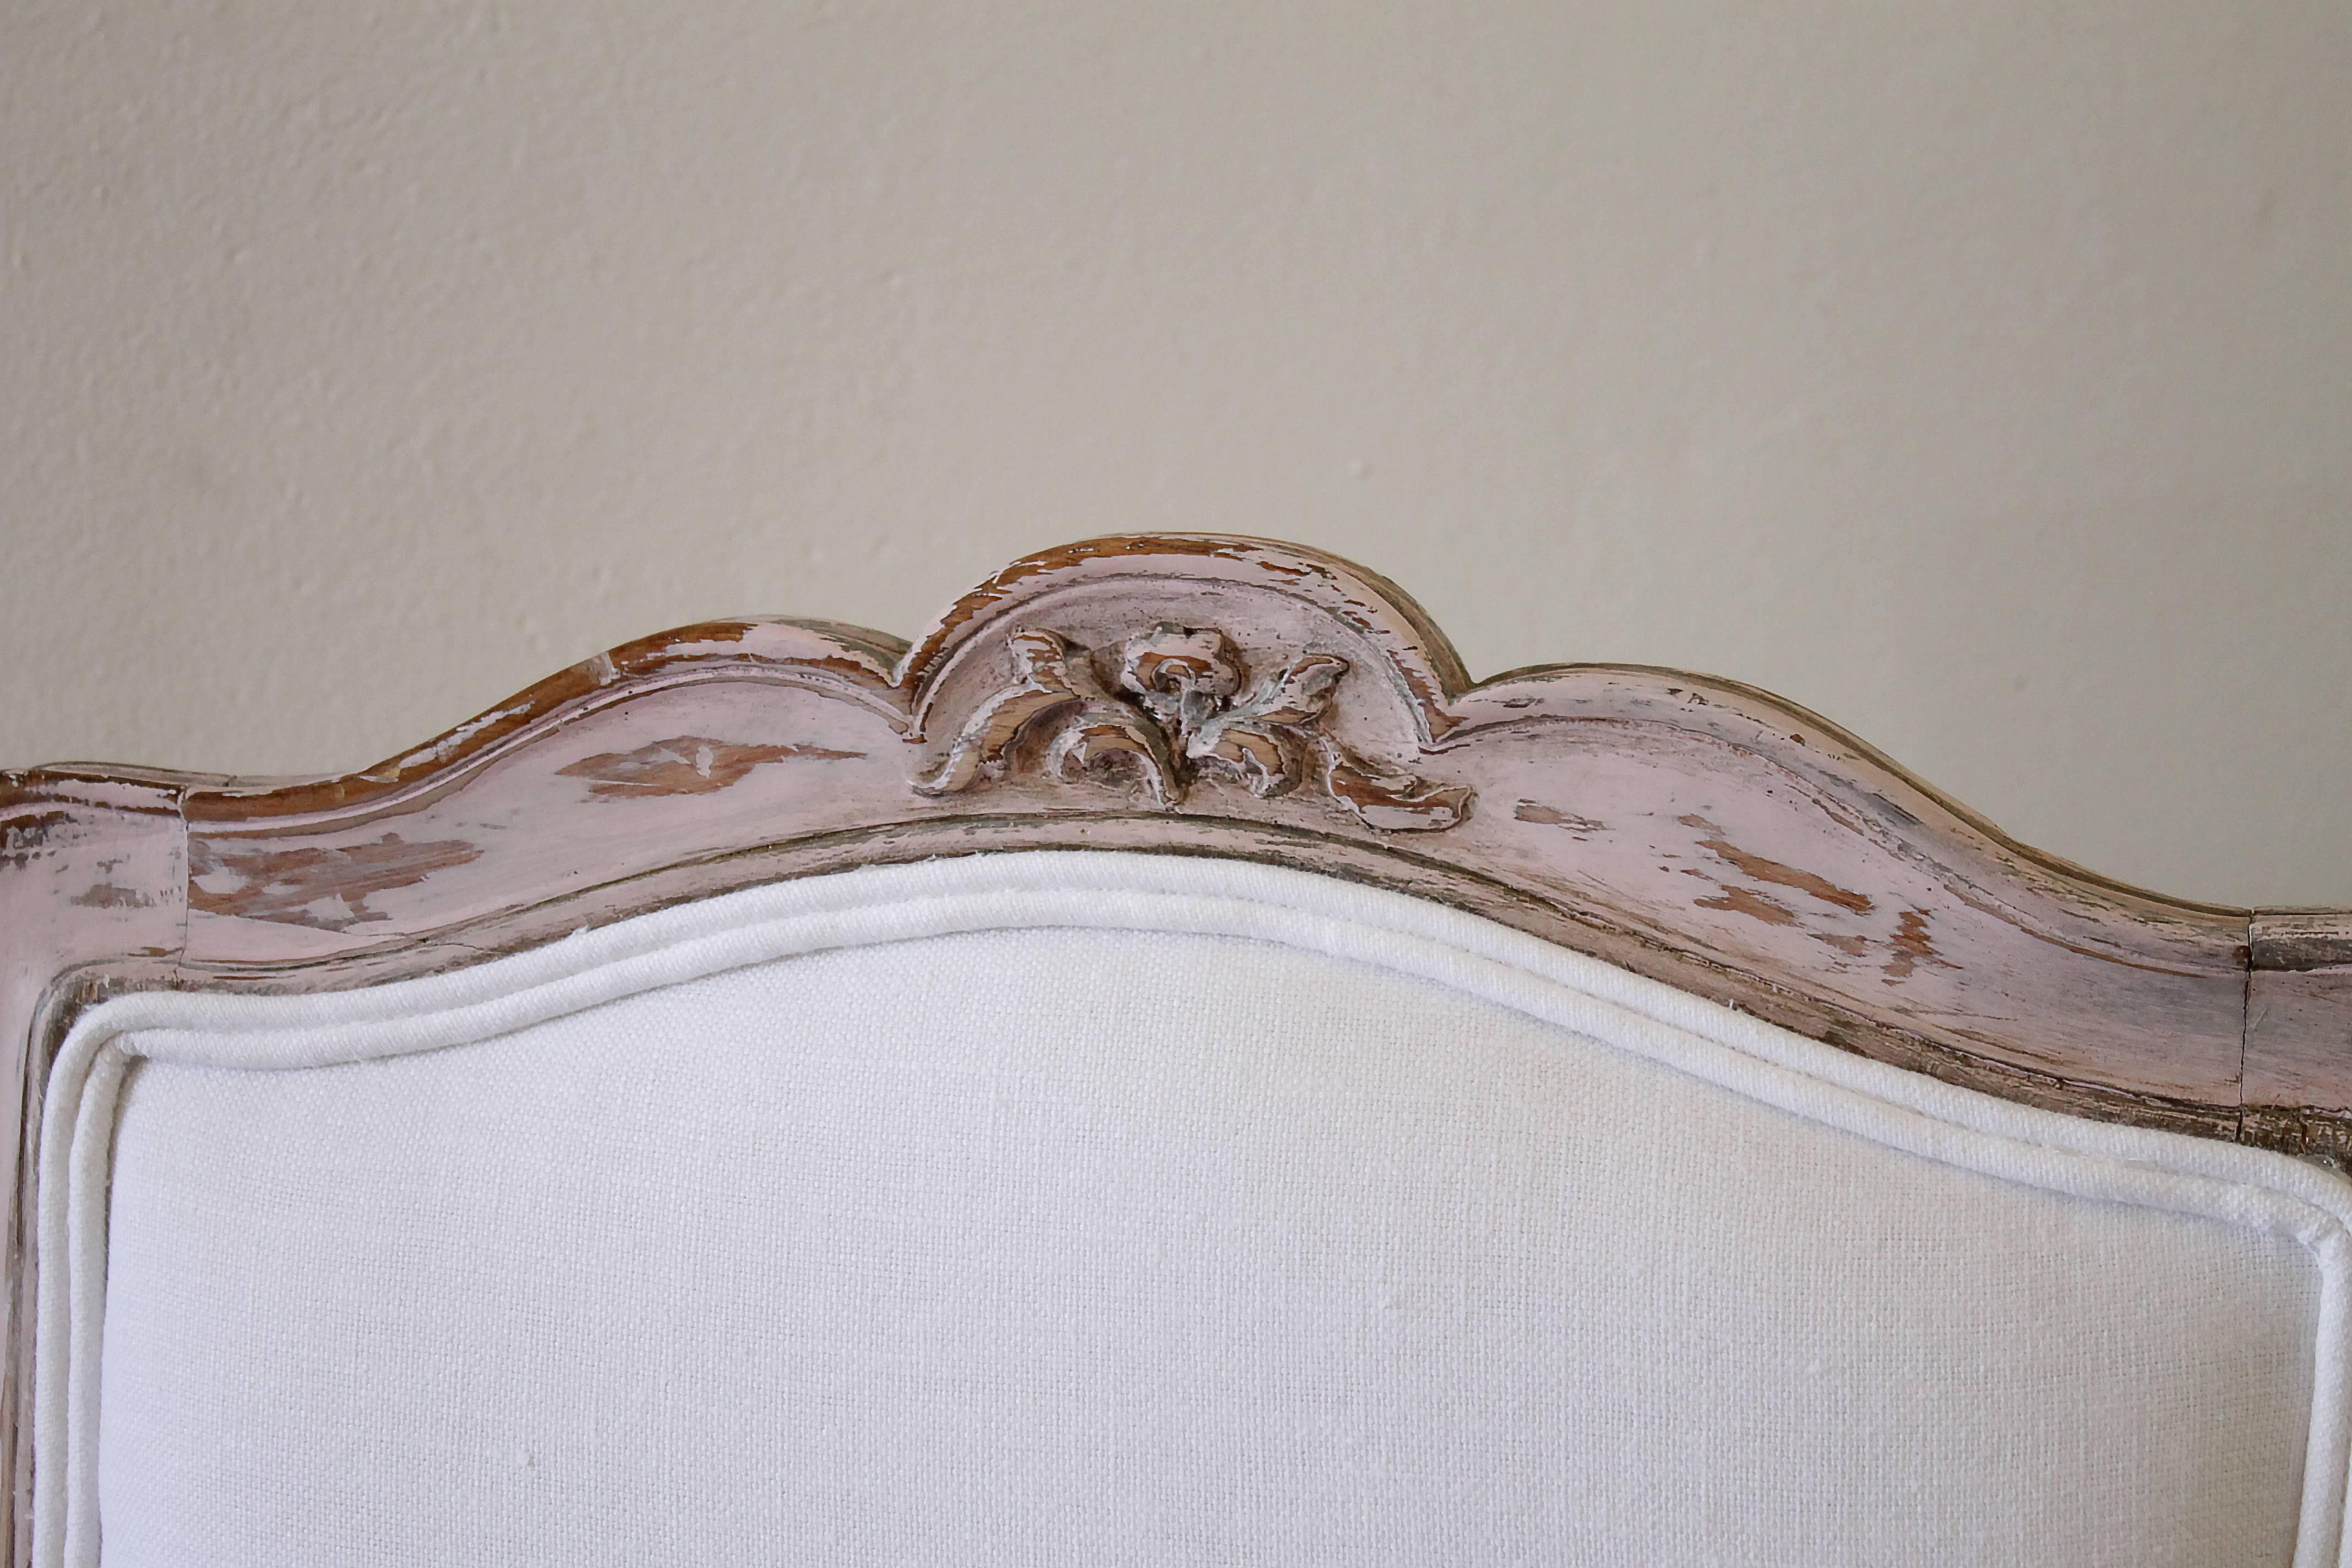 Antiker französischer Frisierstuhl in blassem Rosa lackiert und mit weißem belgischem Leinen bezogen.

Maße: 22